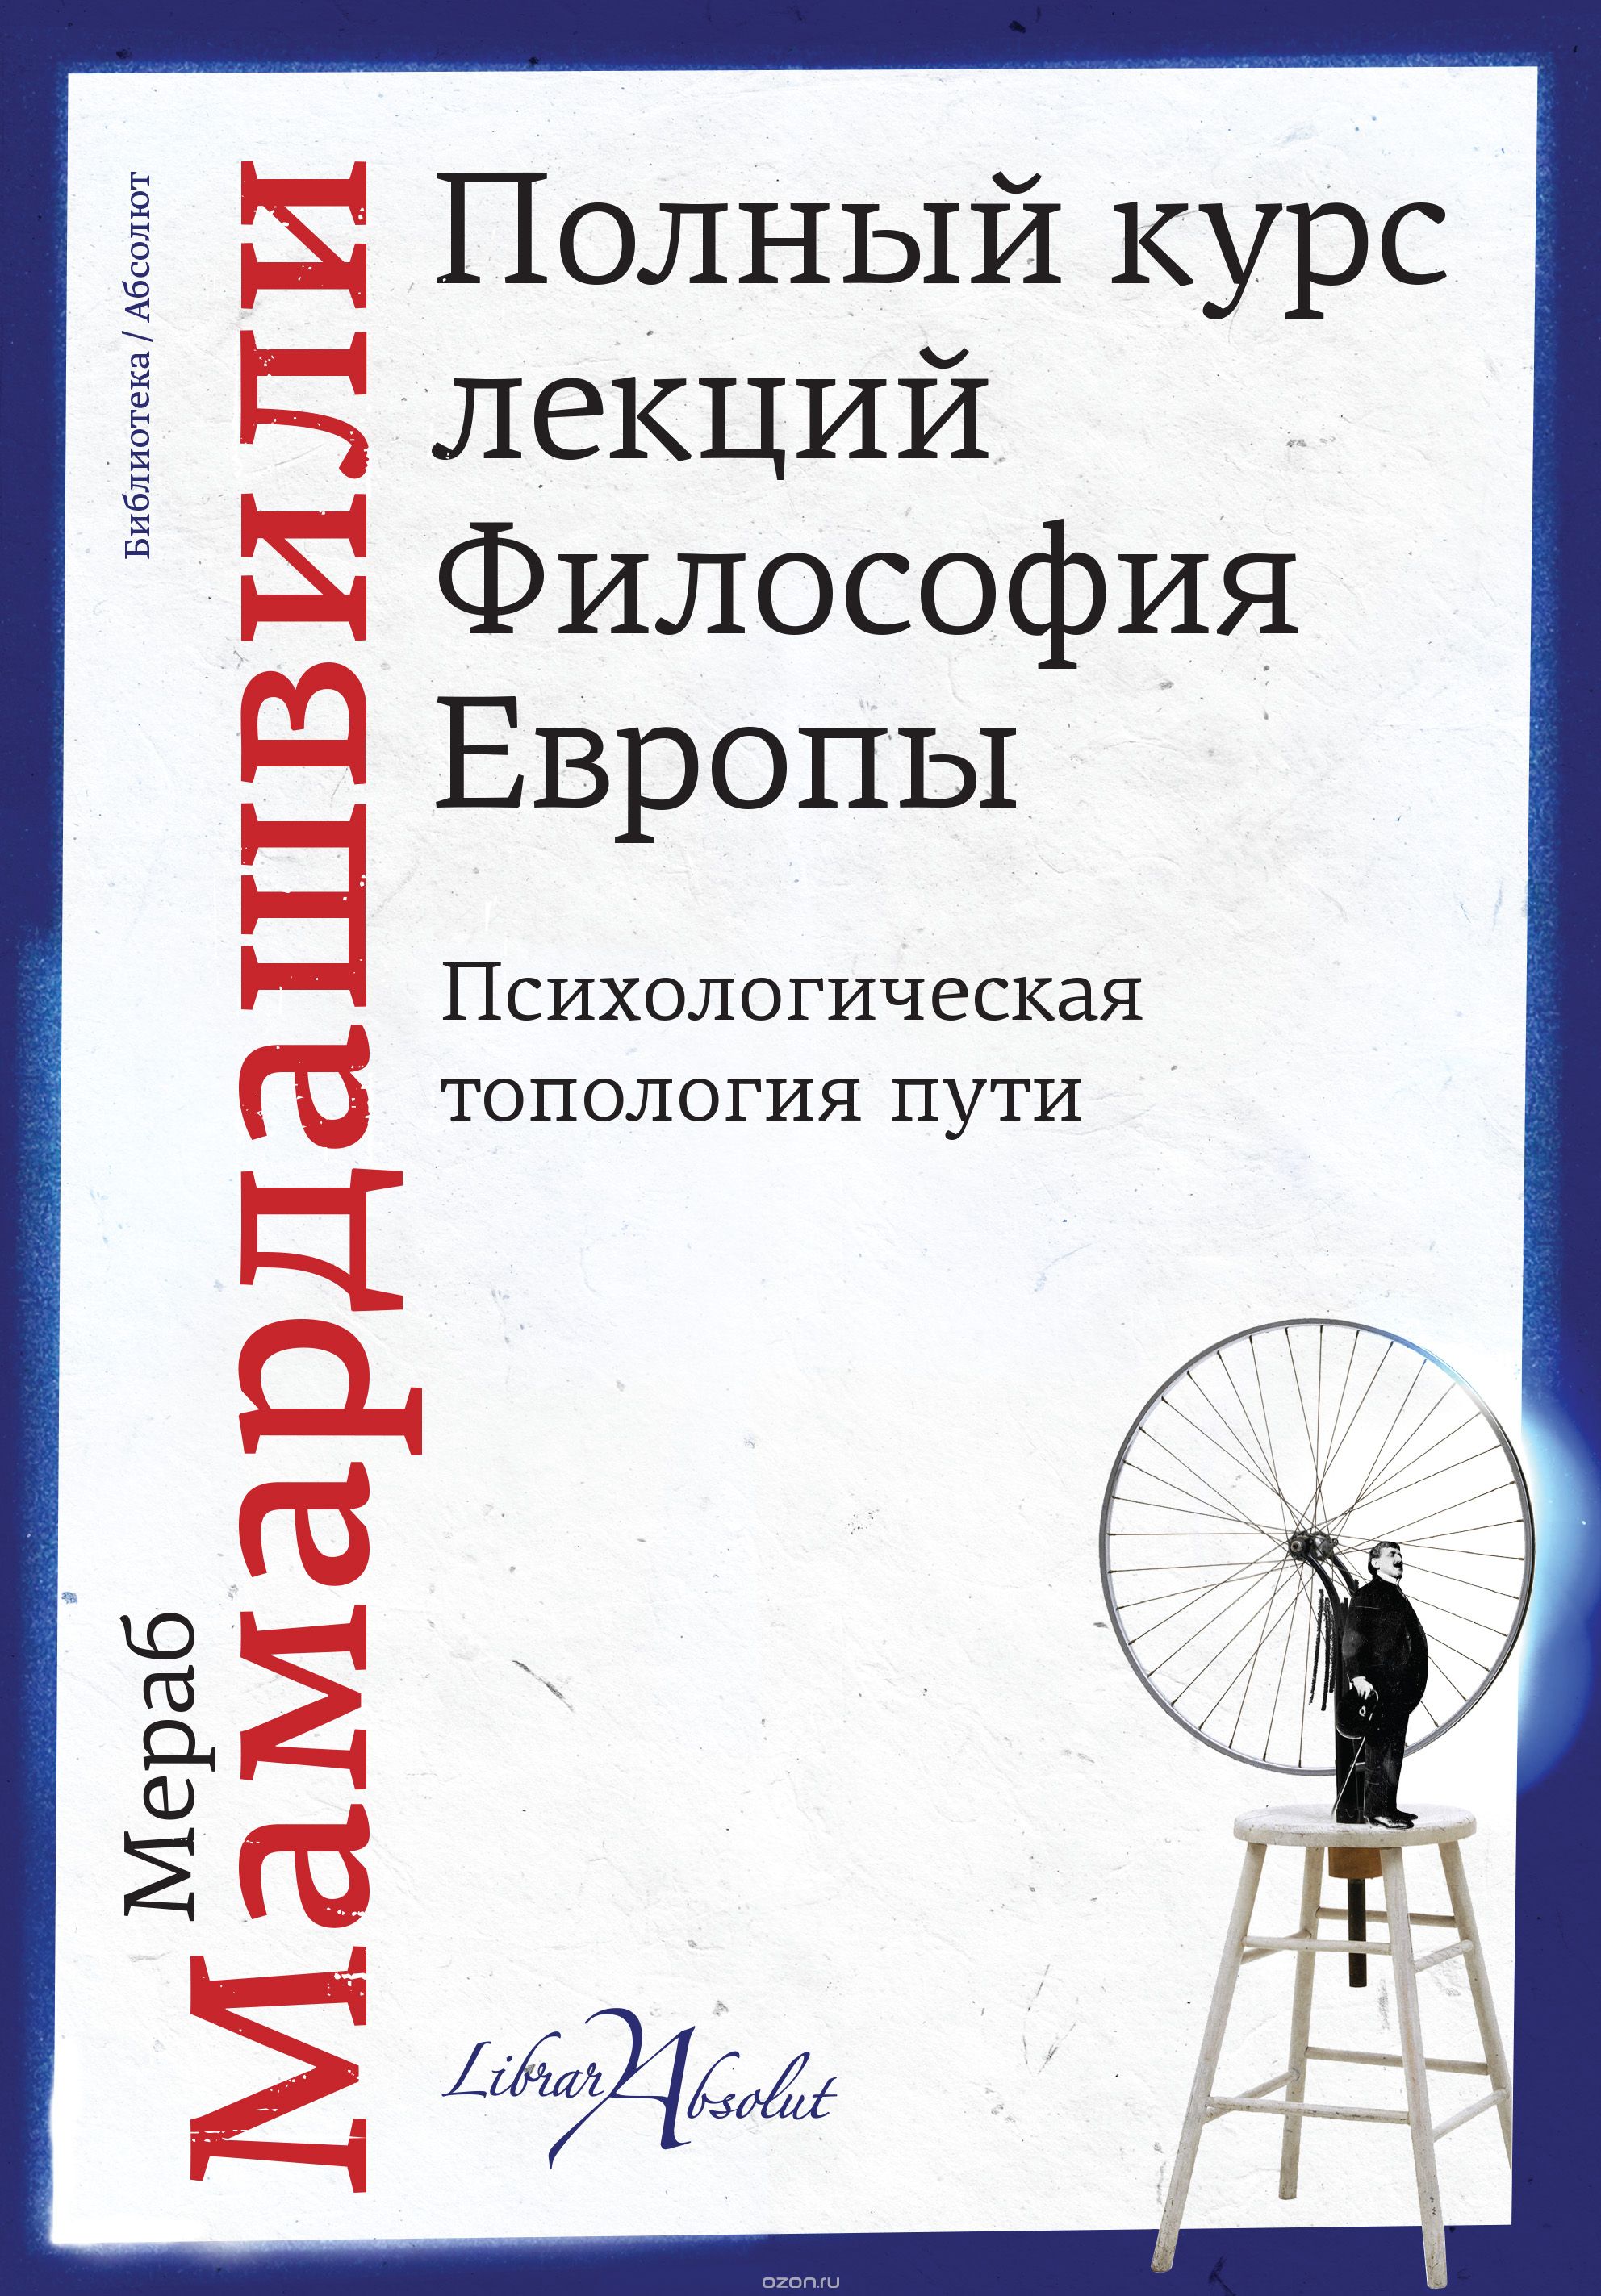 Скачать книгу "Полный курс лекций. Философия Европы, Мераб Мамардашвили"